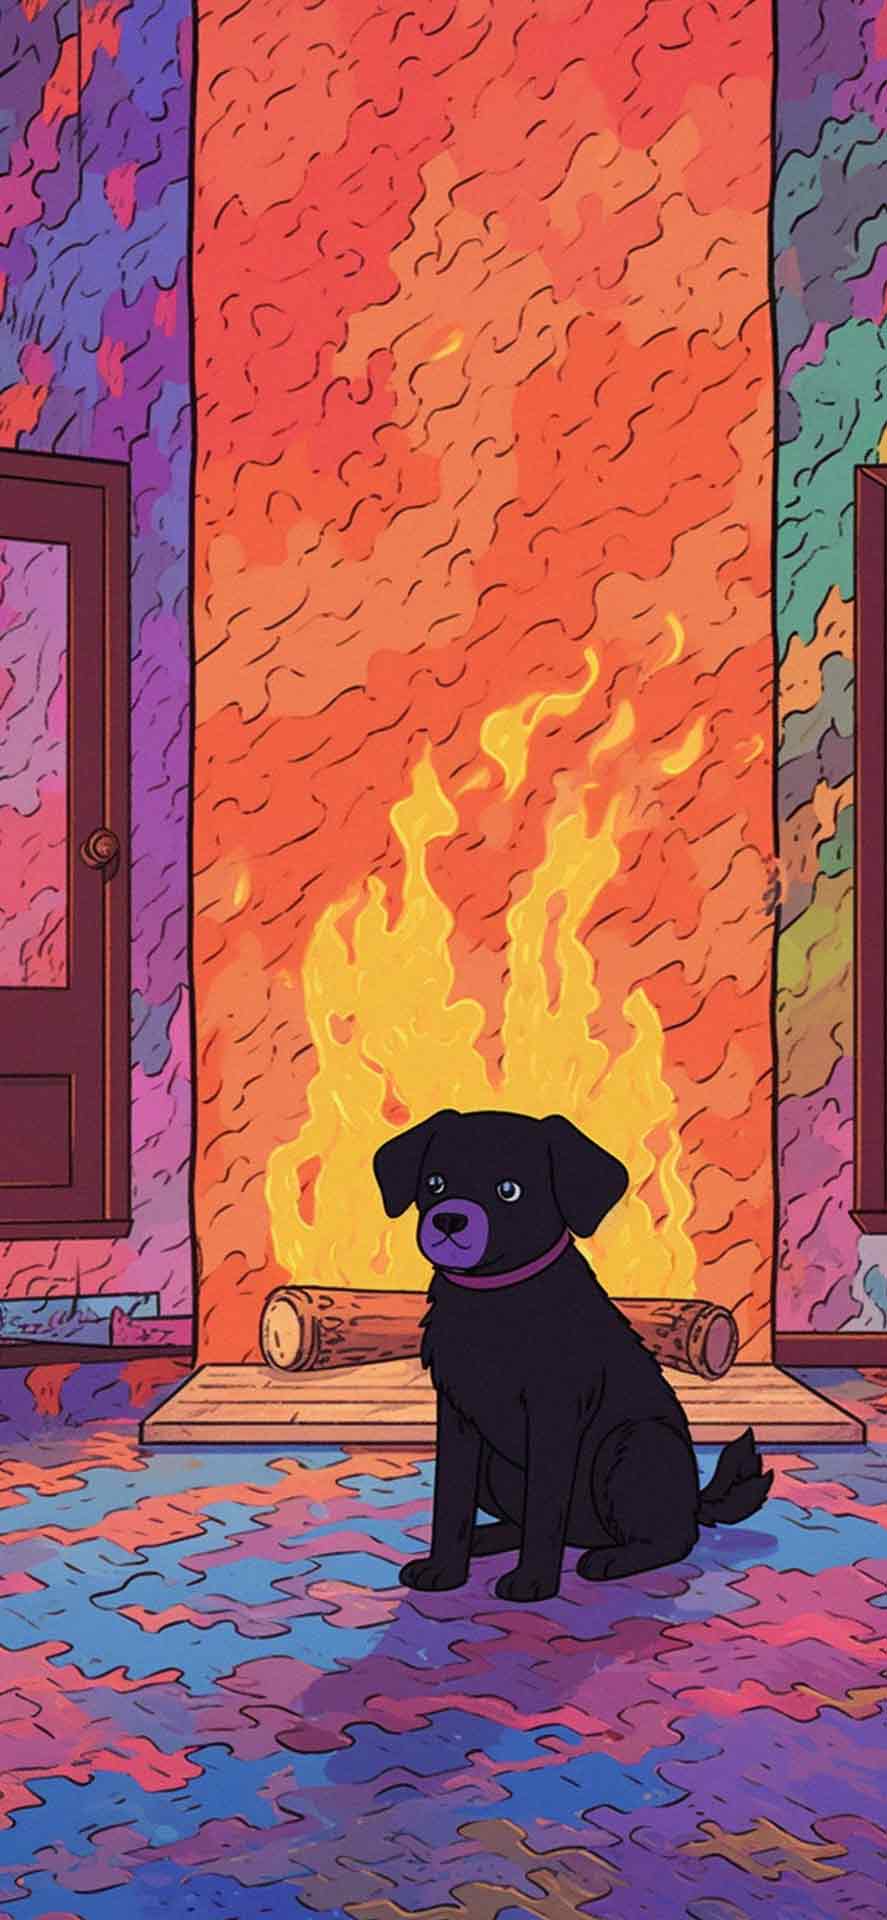 壁炉旁可爱的黑狗壁纸